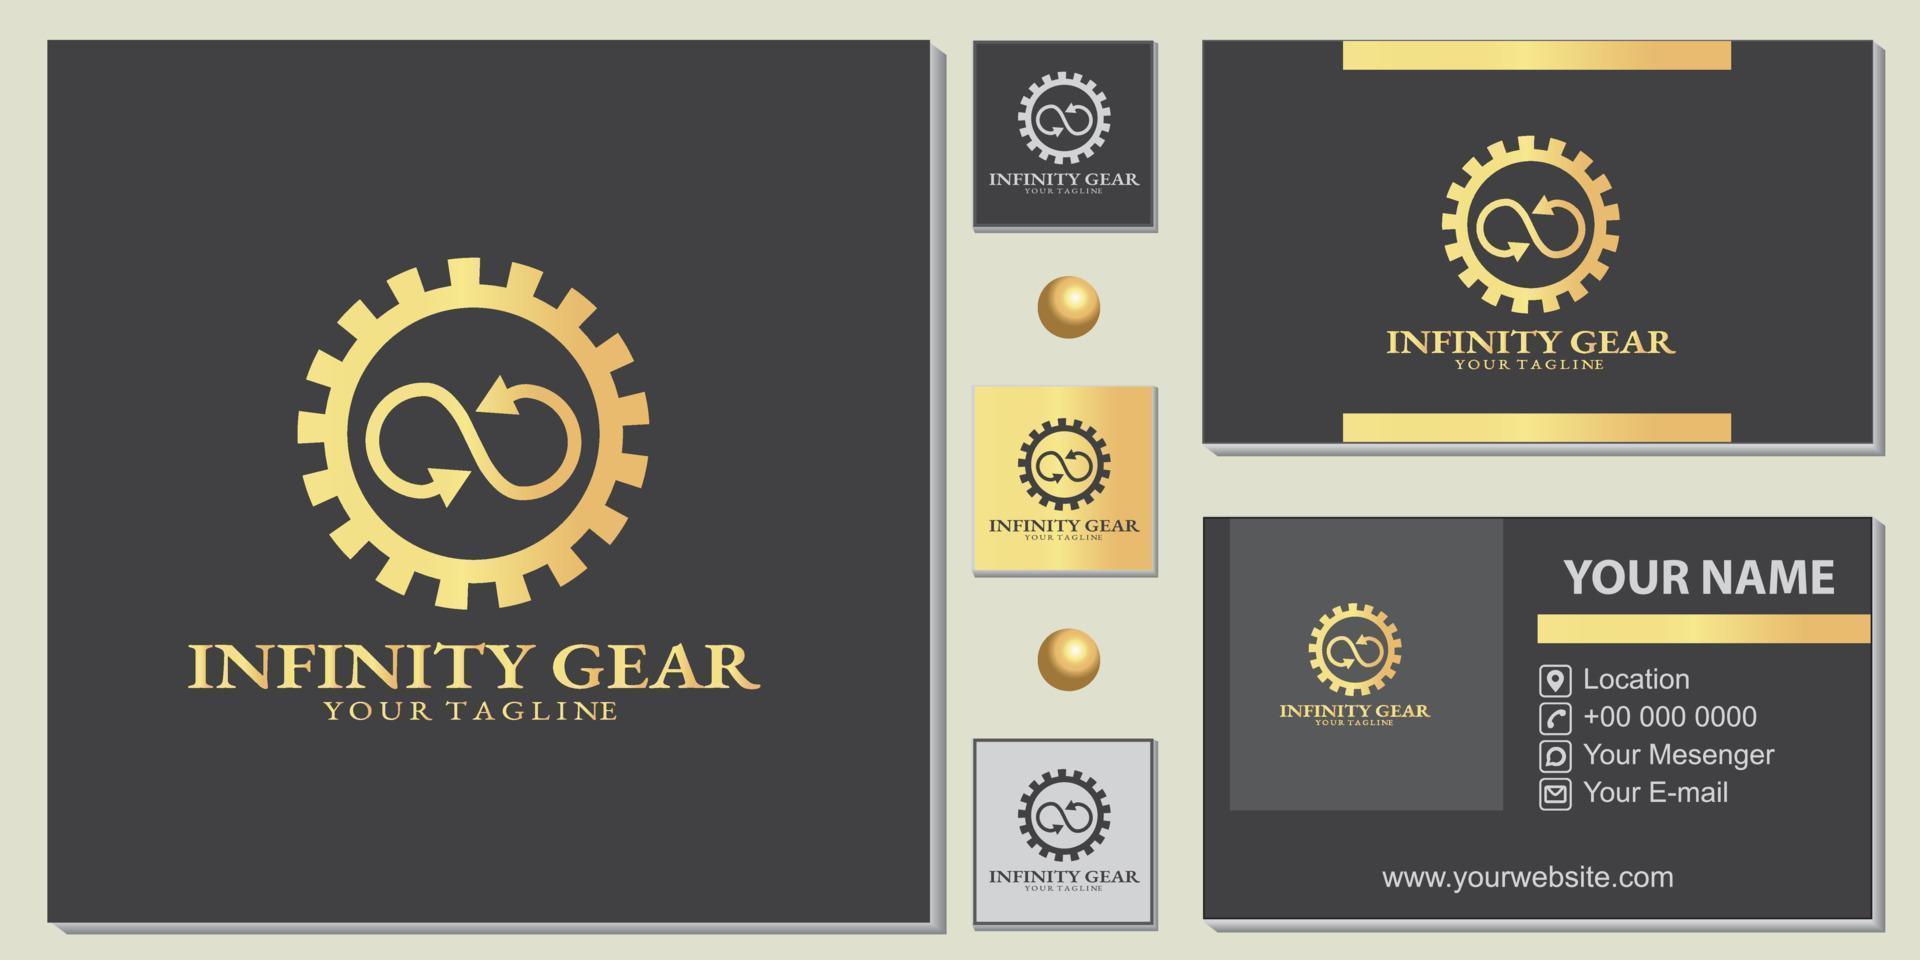 modèle premium de luxe or infinity gear logo avec élégant vecteur de carte de visite eps 10